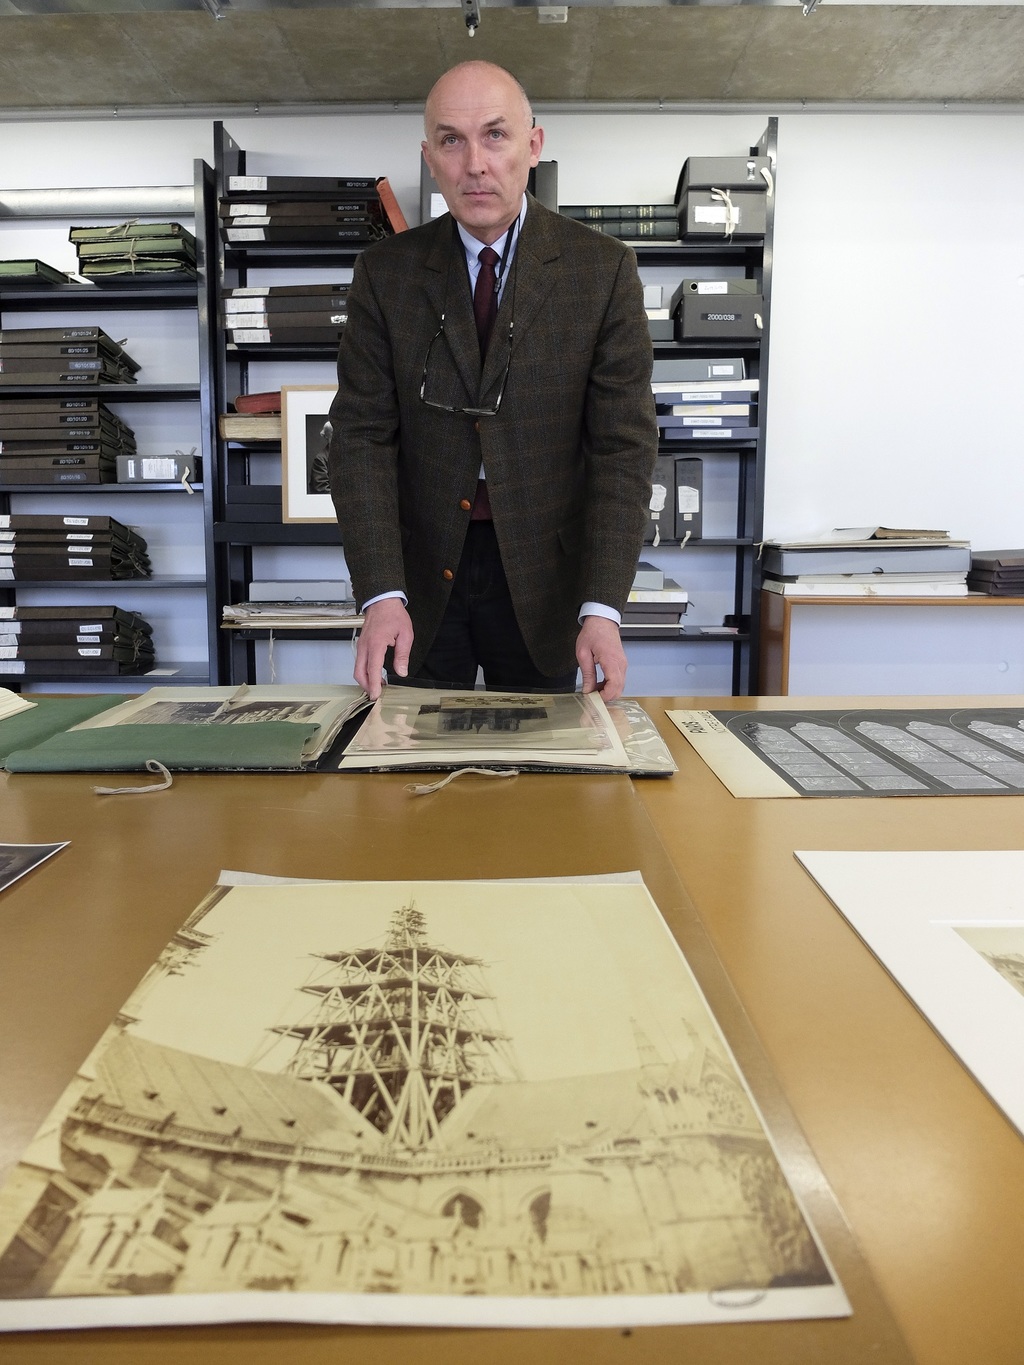 Jean-Charles Forgeret posa con archivos de documentos relacionados con Notre Dame. (AP)